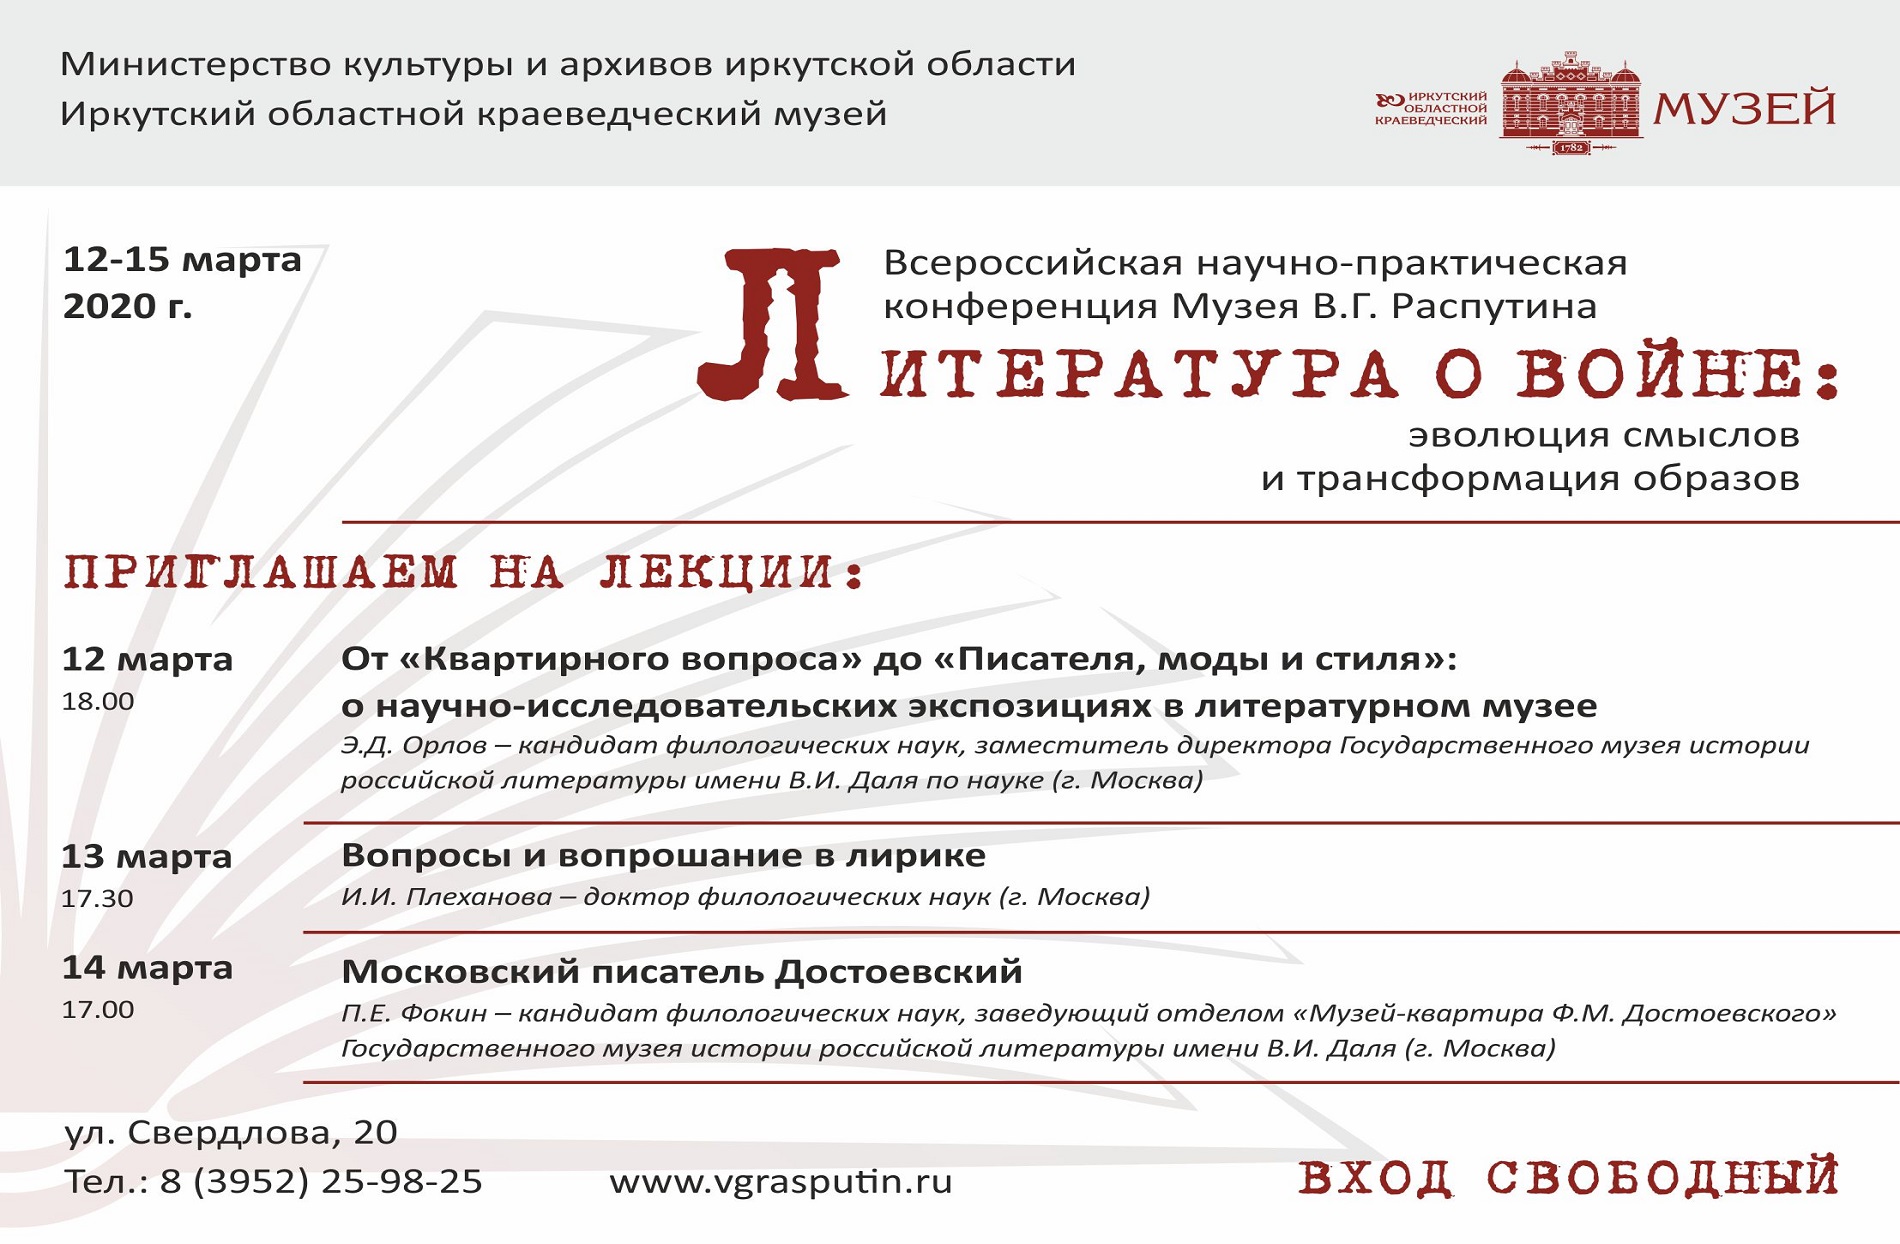 Лекции в Музее В.Г. Распутина от участников Конференции